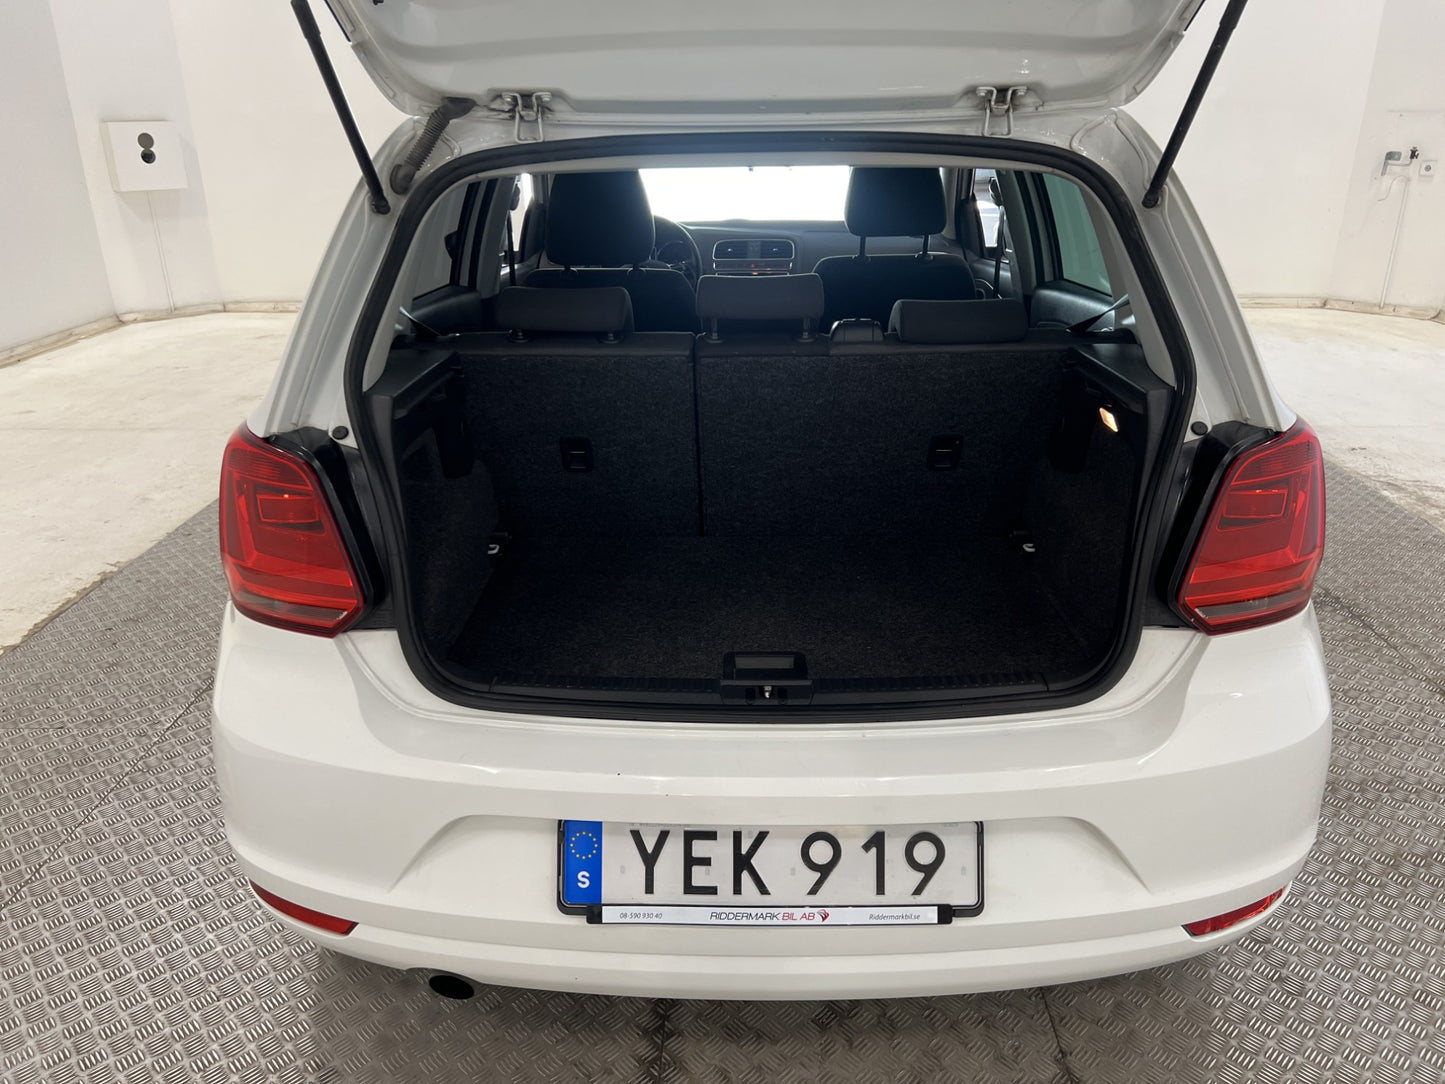 Volkswagen Polo 1.2 TSI 90hk Låg skatt Välservad 0,48l/mil